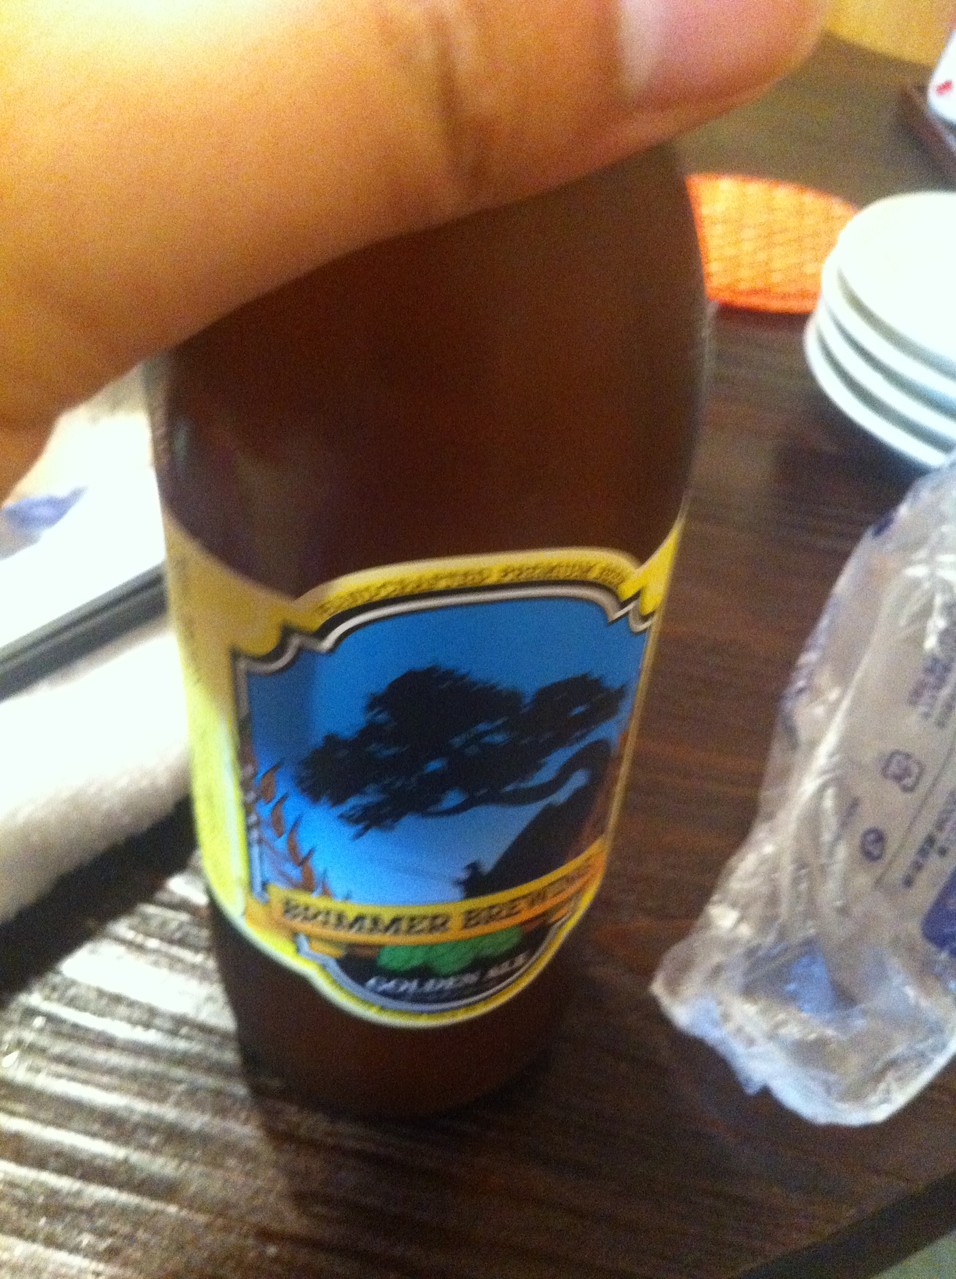 ふわっとさんではクラフトビアムーンライト、ブリマーブルーイングの醸造したビールを飲むことが出来ます。画像はブリマーブルーイング「ポーター」。